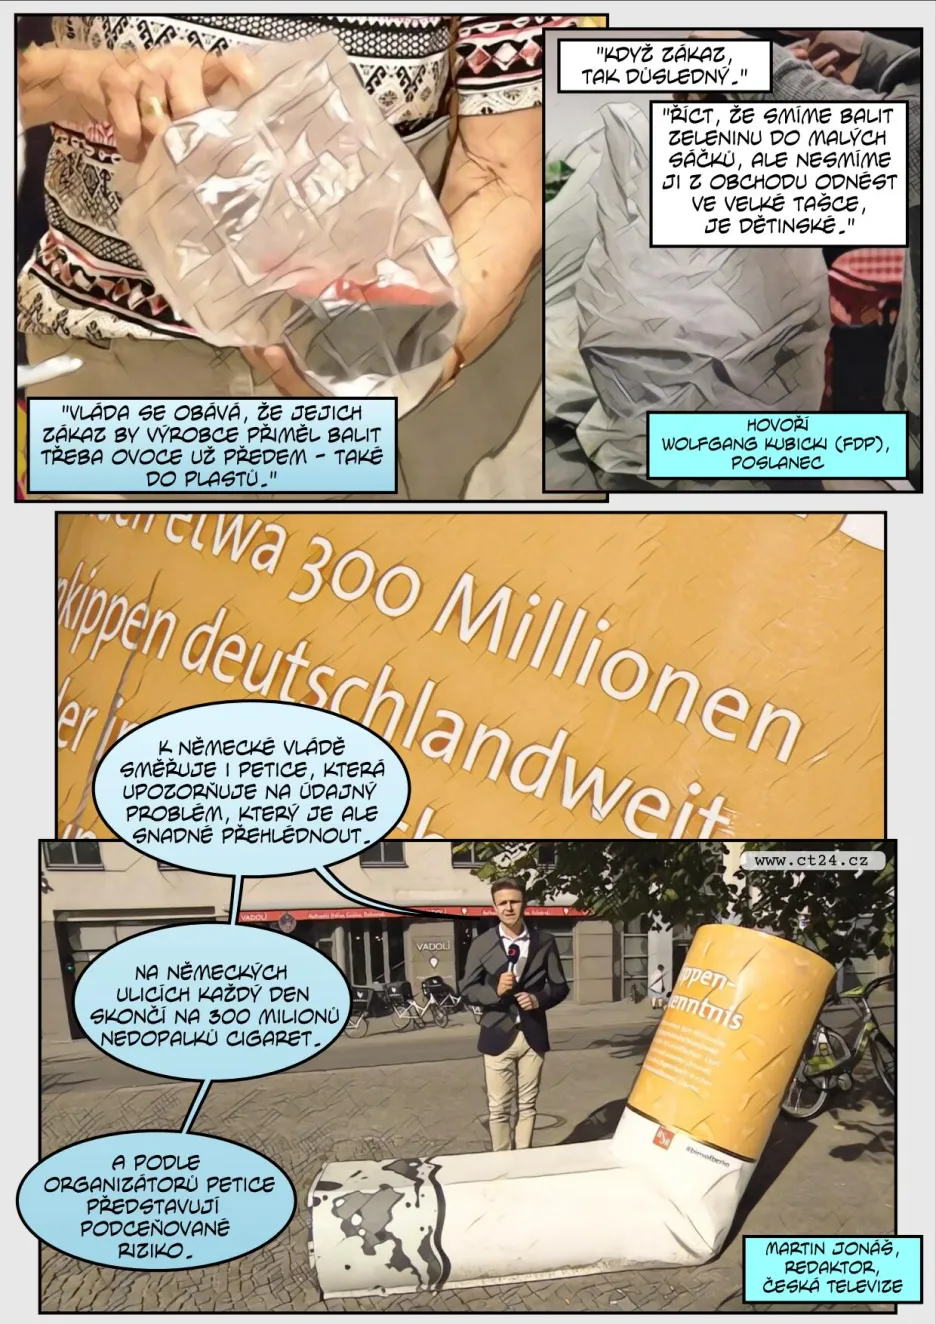 Němcí chtějí zakázat plastové tašky, dobrovolníci bojují i s pohozenými cigarety